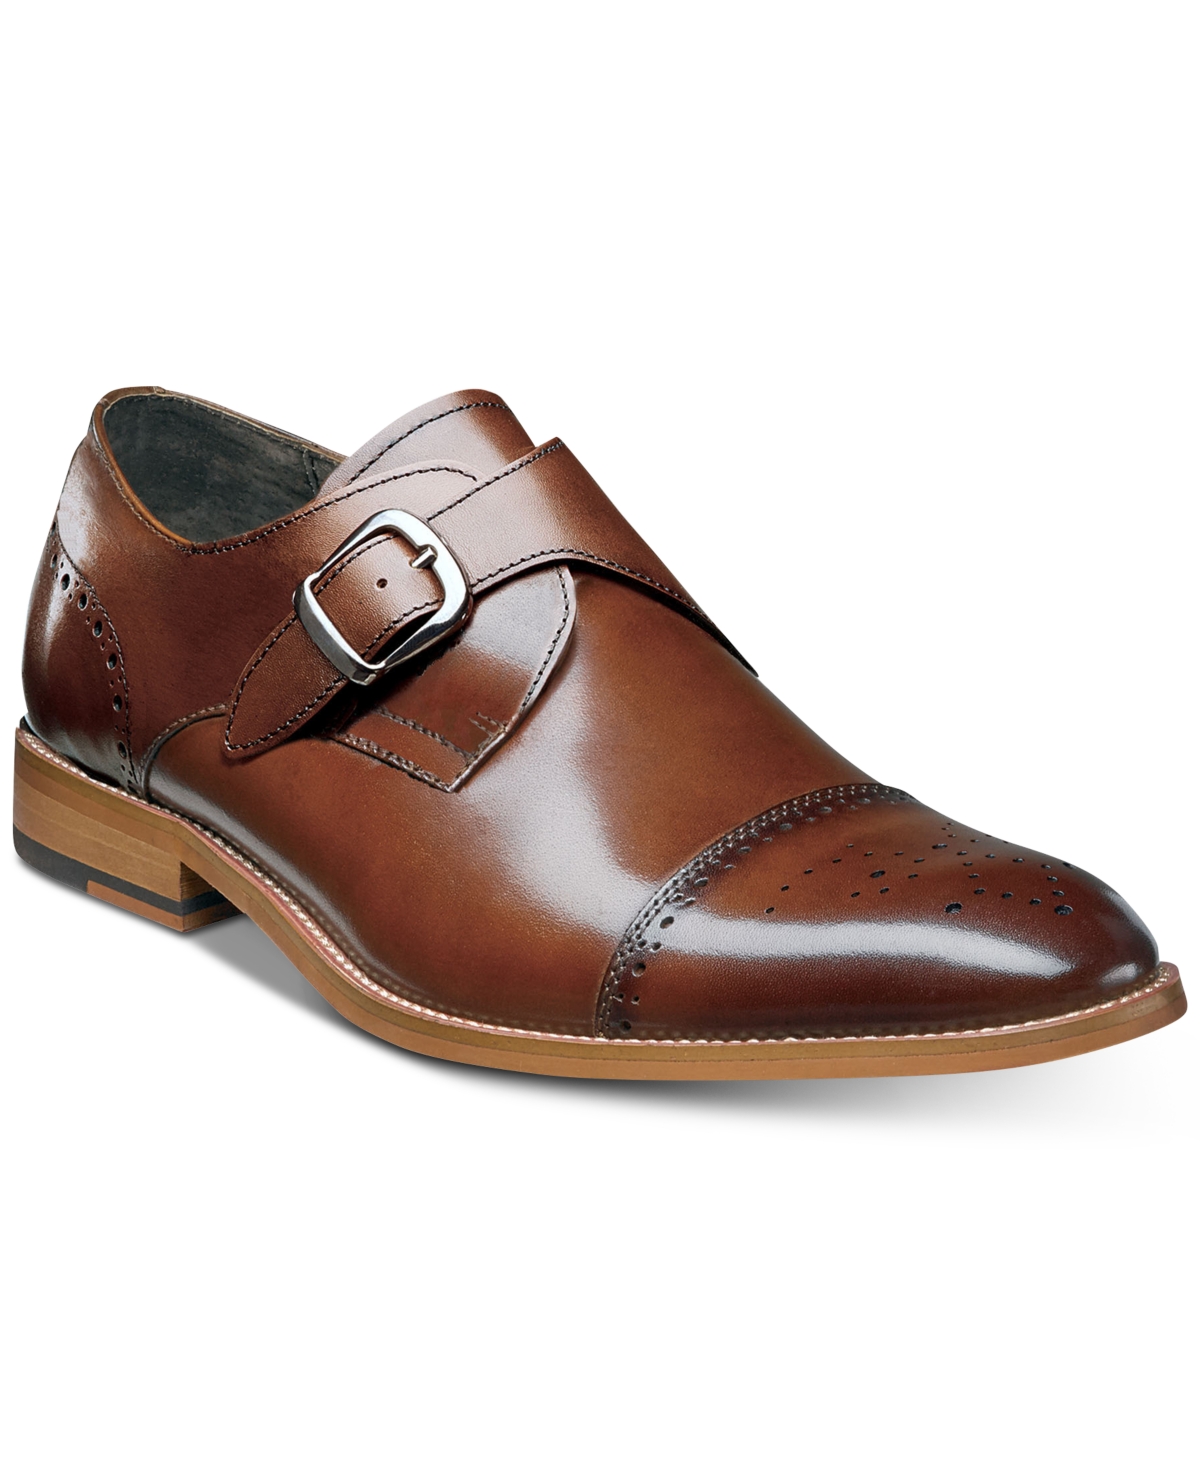 Men's Duncan Cap-Toe Single Monk Strap Shoes, Created for Macy's - Cognac